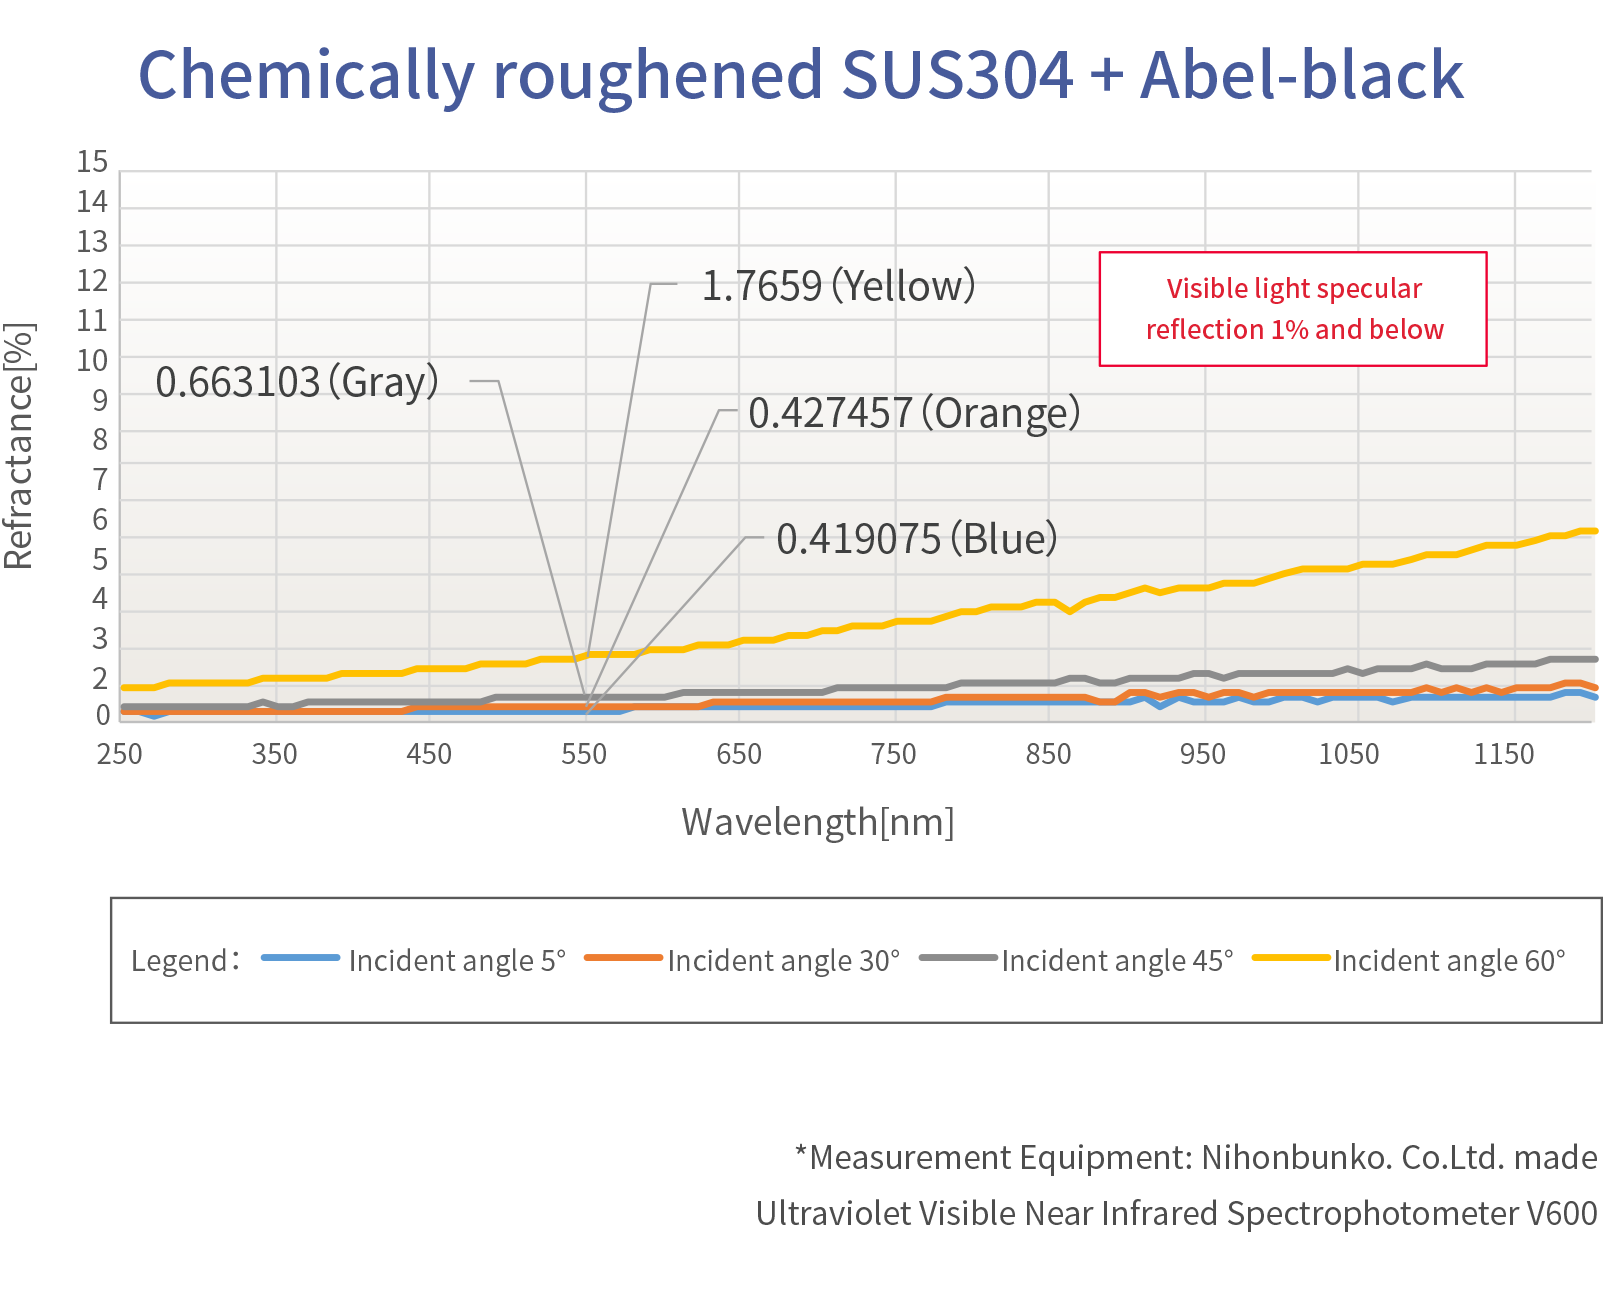 Reflectivity data of Abel-black : Chemically roughened SUS304 + Abel-black